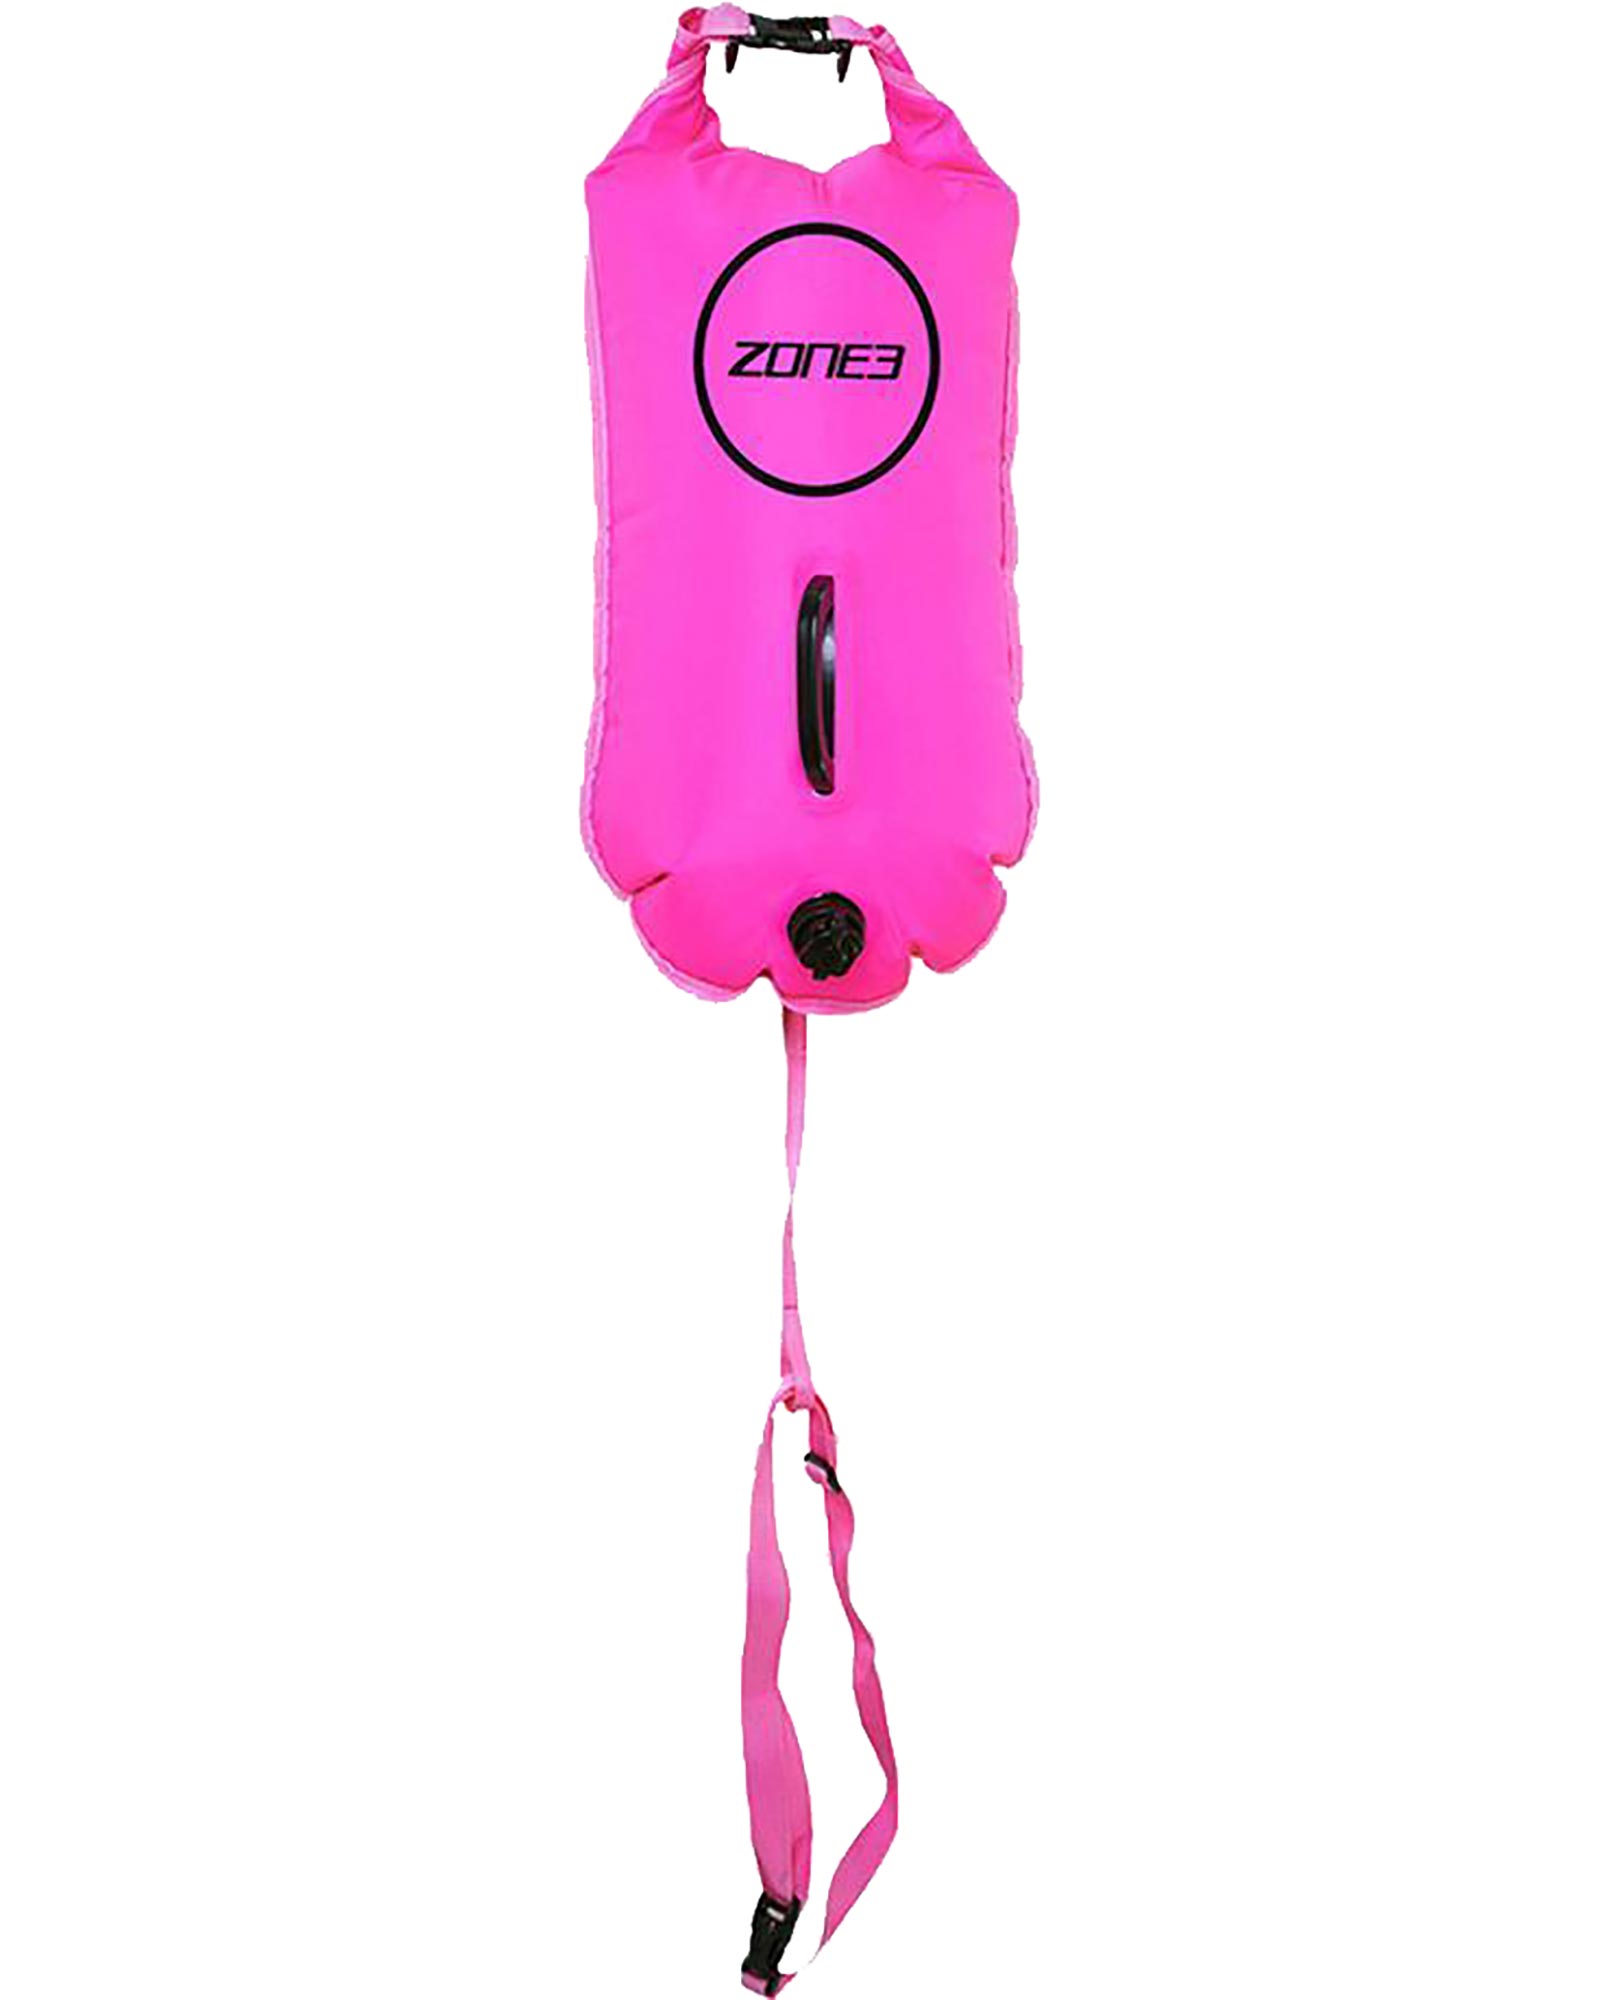 Zone3 Swim Safety Buoy/Dry Bag 28L - Hi Vis Pink